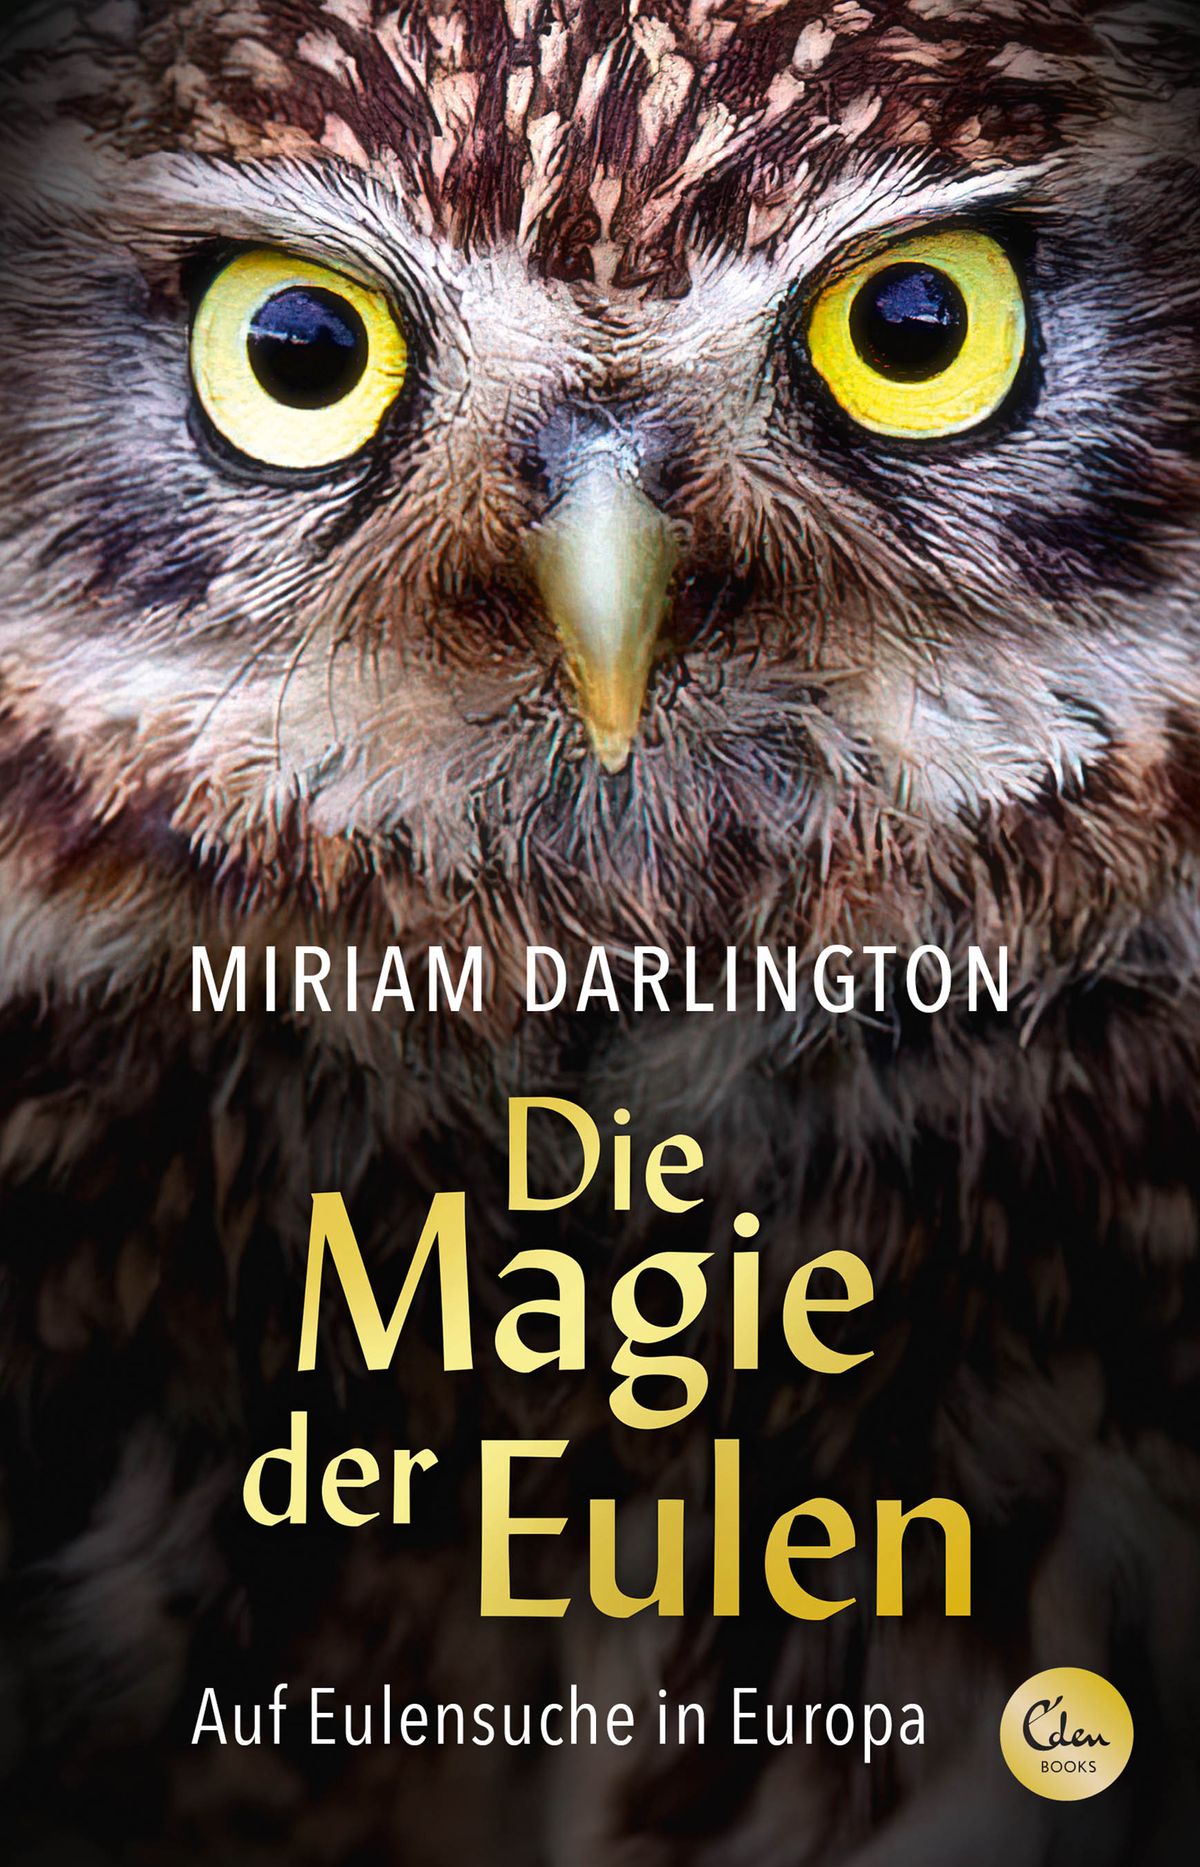 Miriam Darlington: Die Magie der Eulen